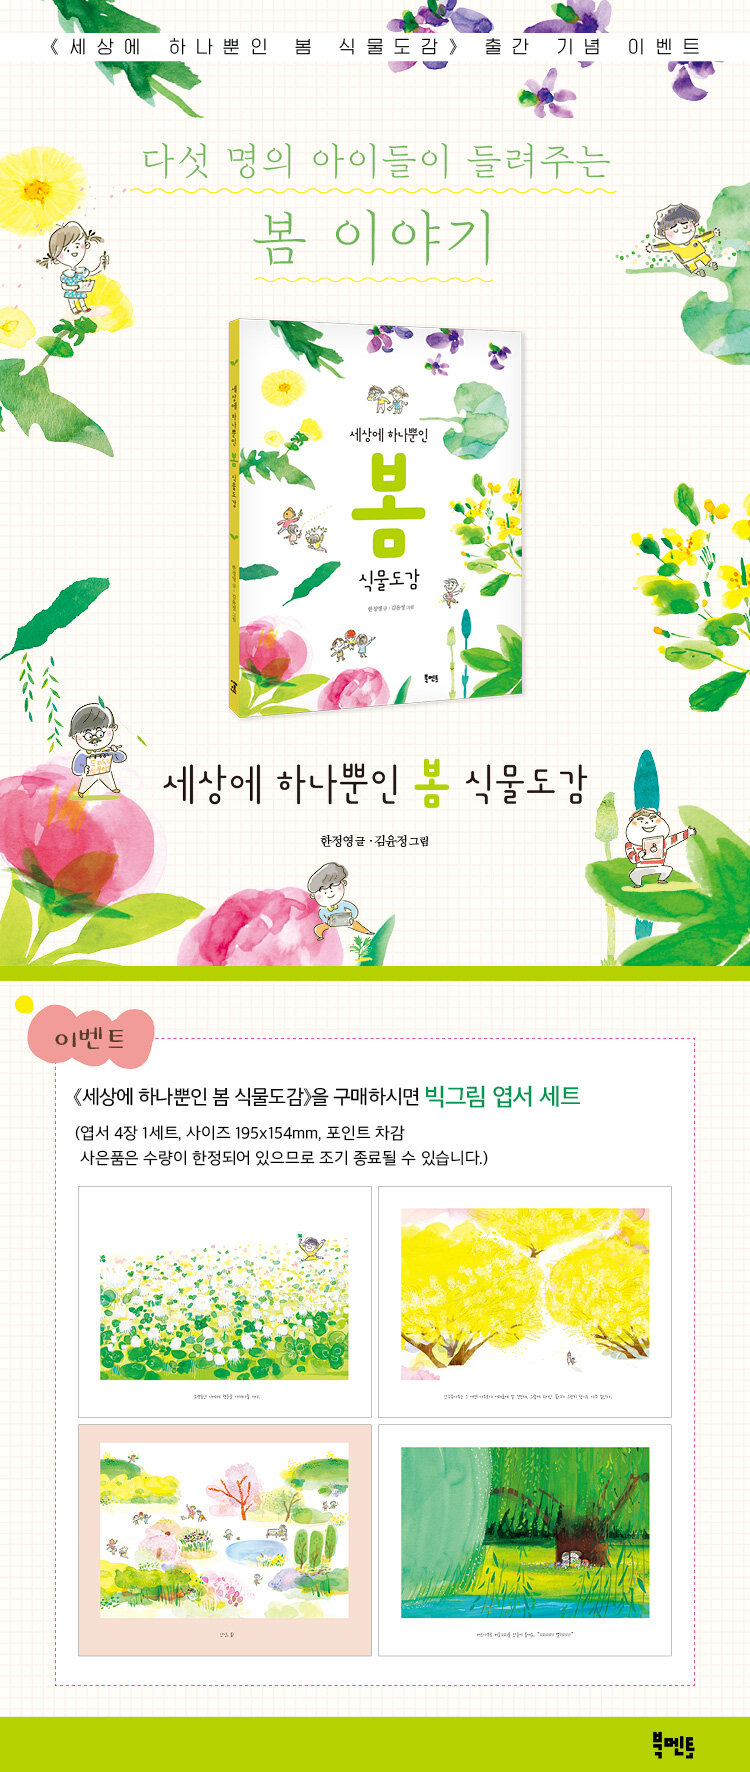 <세상에 하나뿐인 봄 식물도감> 출간 기념 이벤트